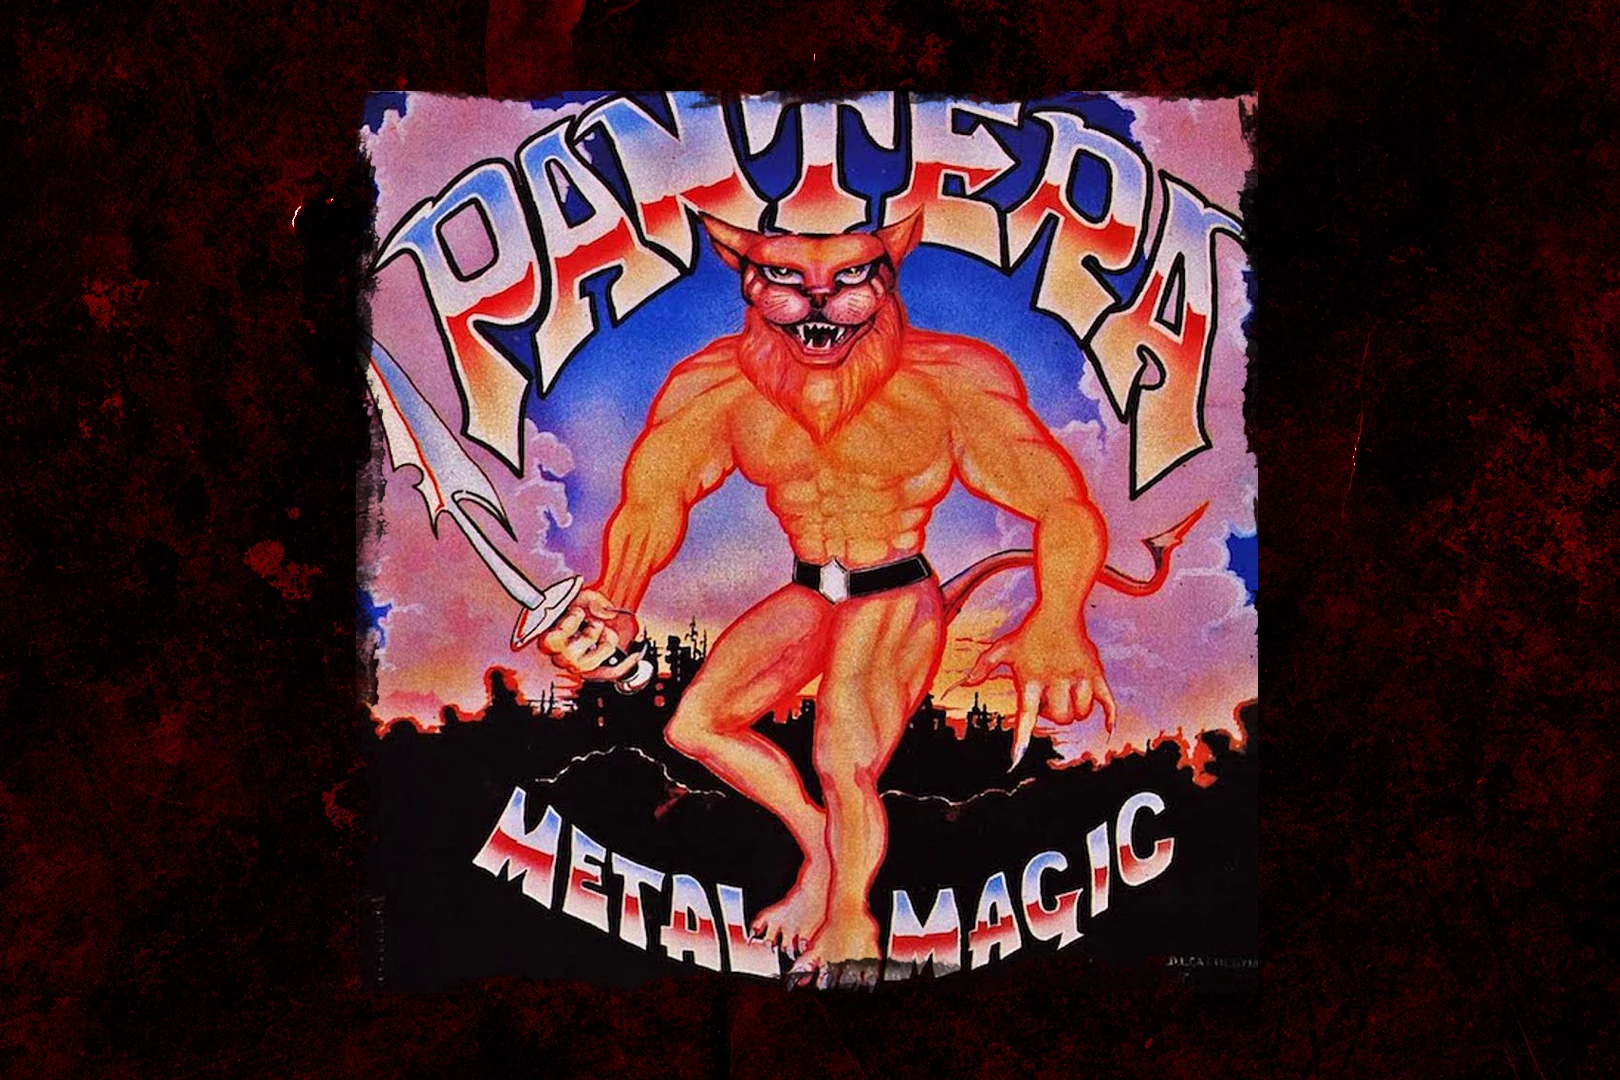 Pantera-Metal-Magic.jpg